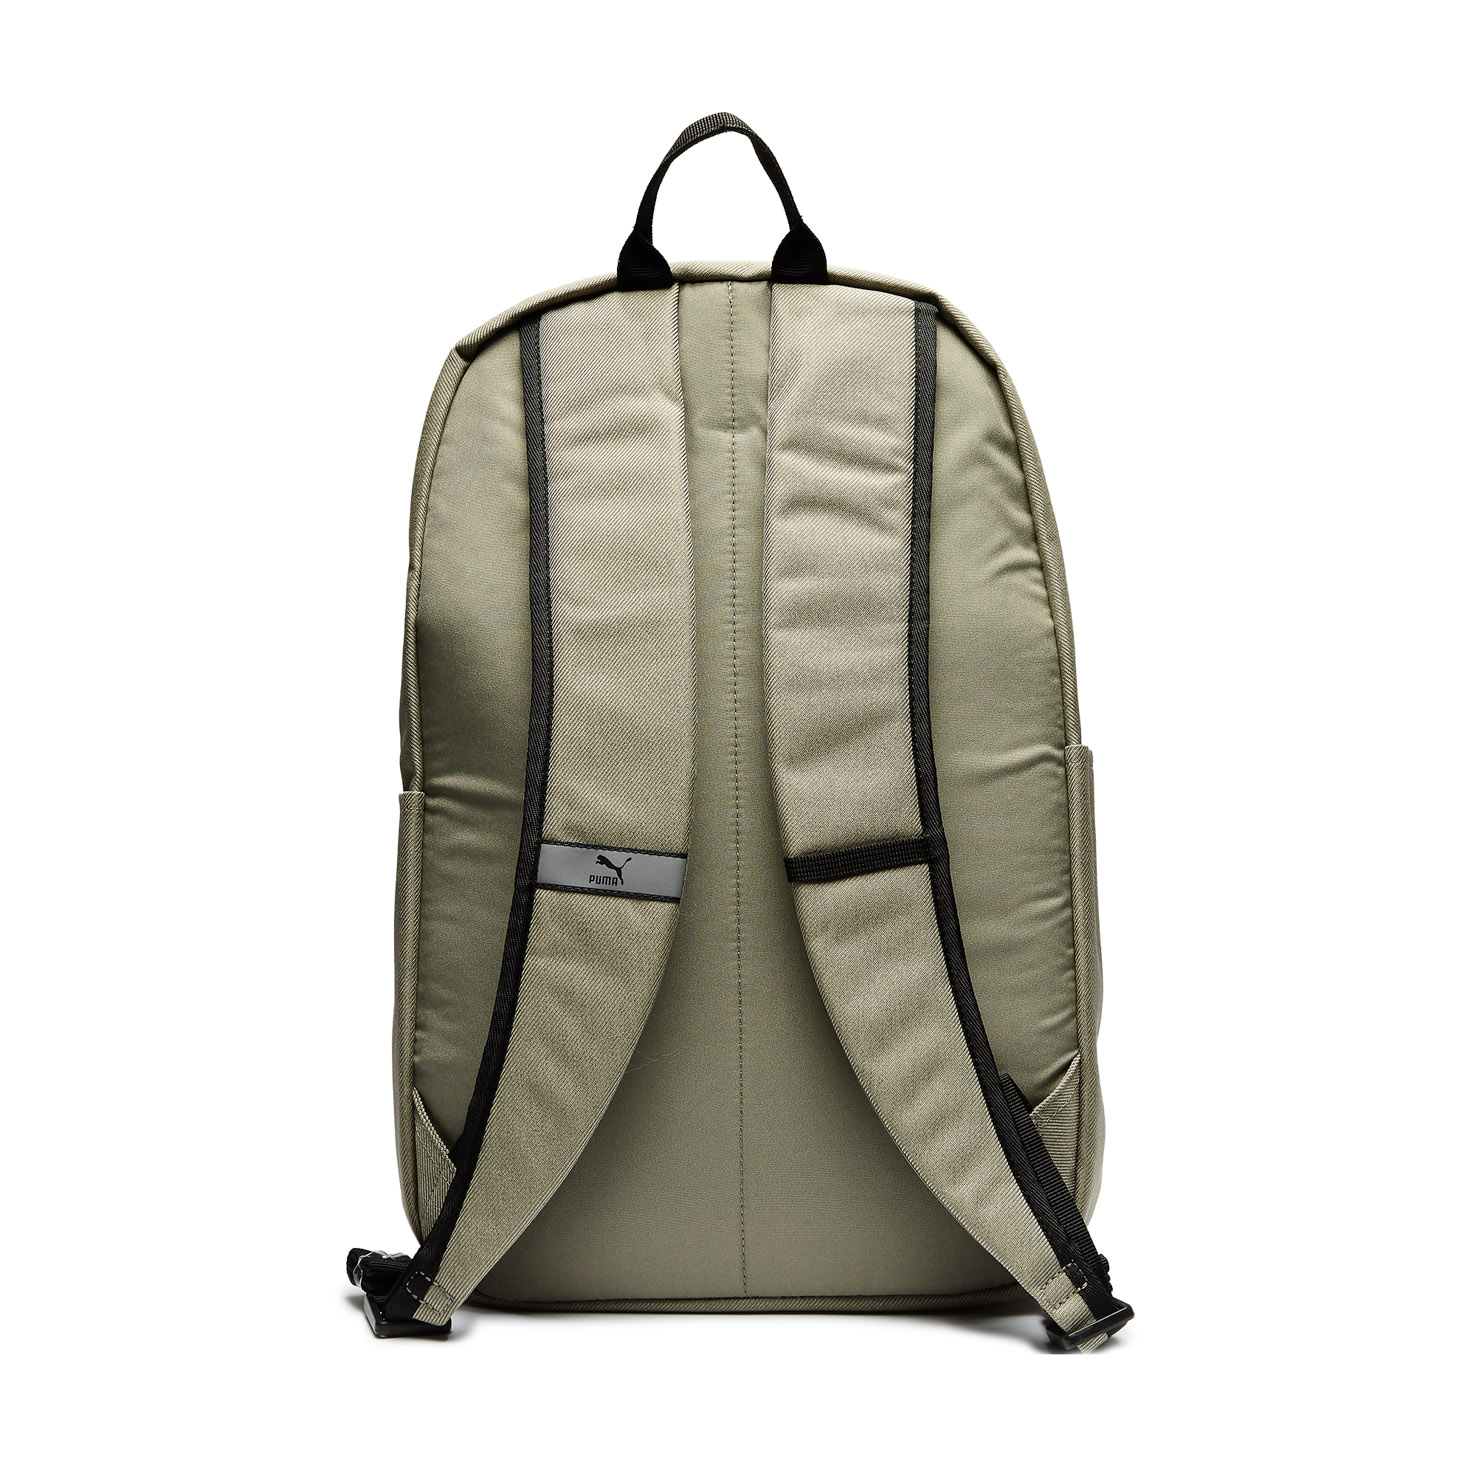 PUMA x PEANUTS Backpack PUMA, размер Один размер, цвет бежевый PM078009 - фото 2